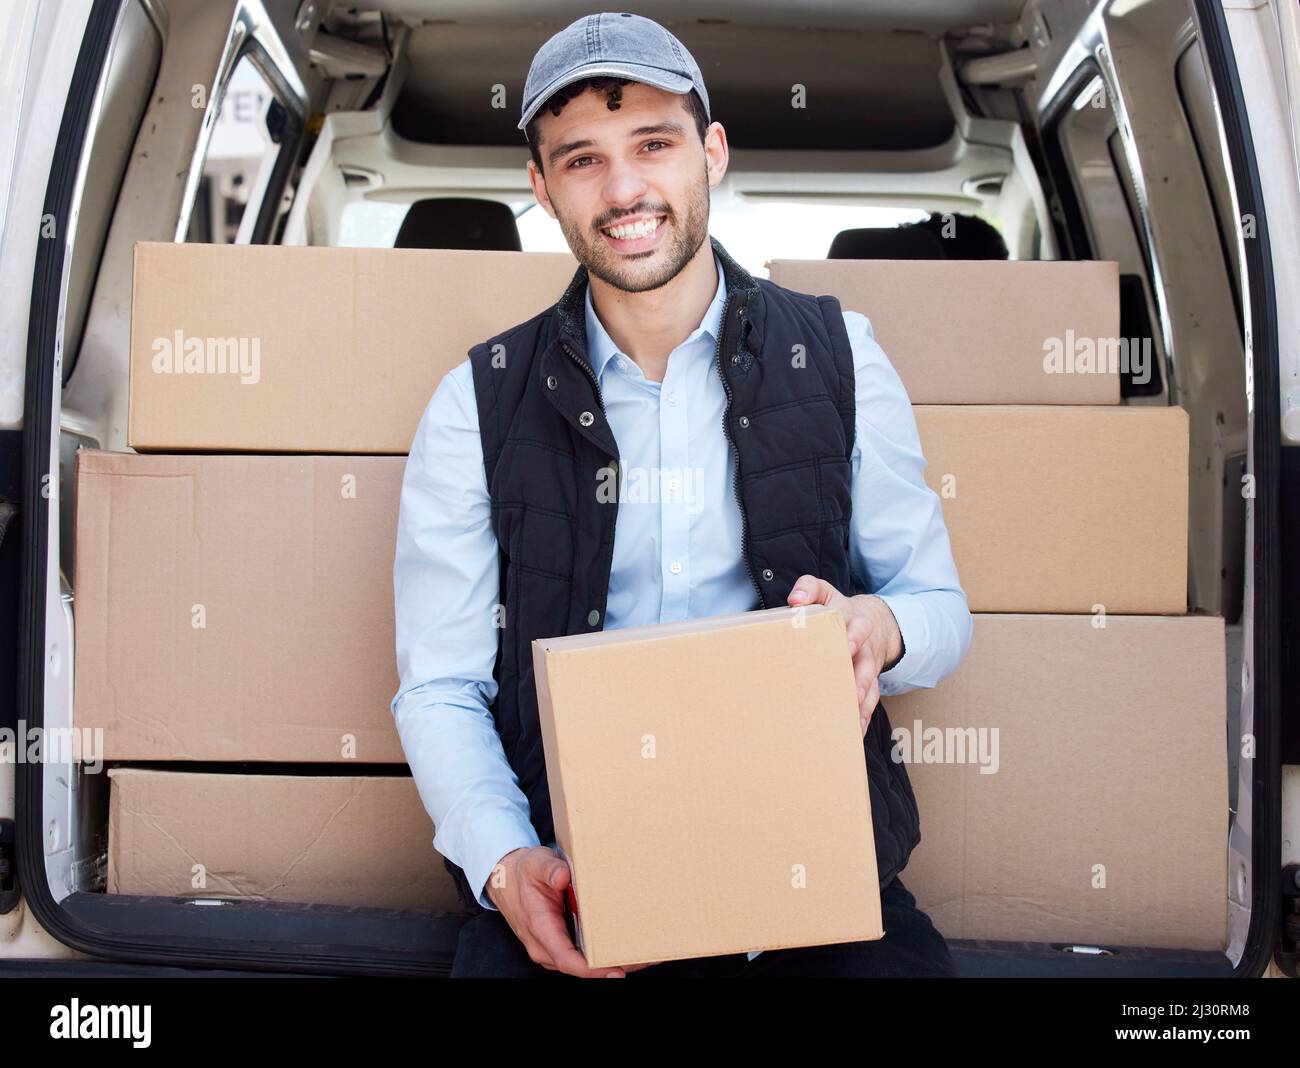 Auf dem Weg zum nächsten Karton. Porträt eines jungen Lieferers, der Kisten aus einem Lieferwagen lade. Stockfoto